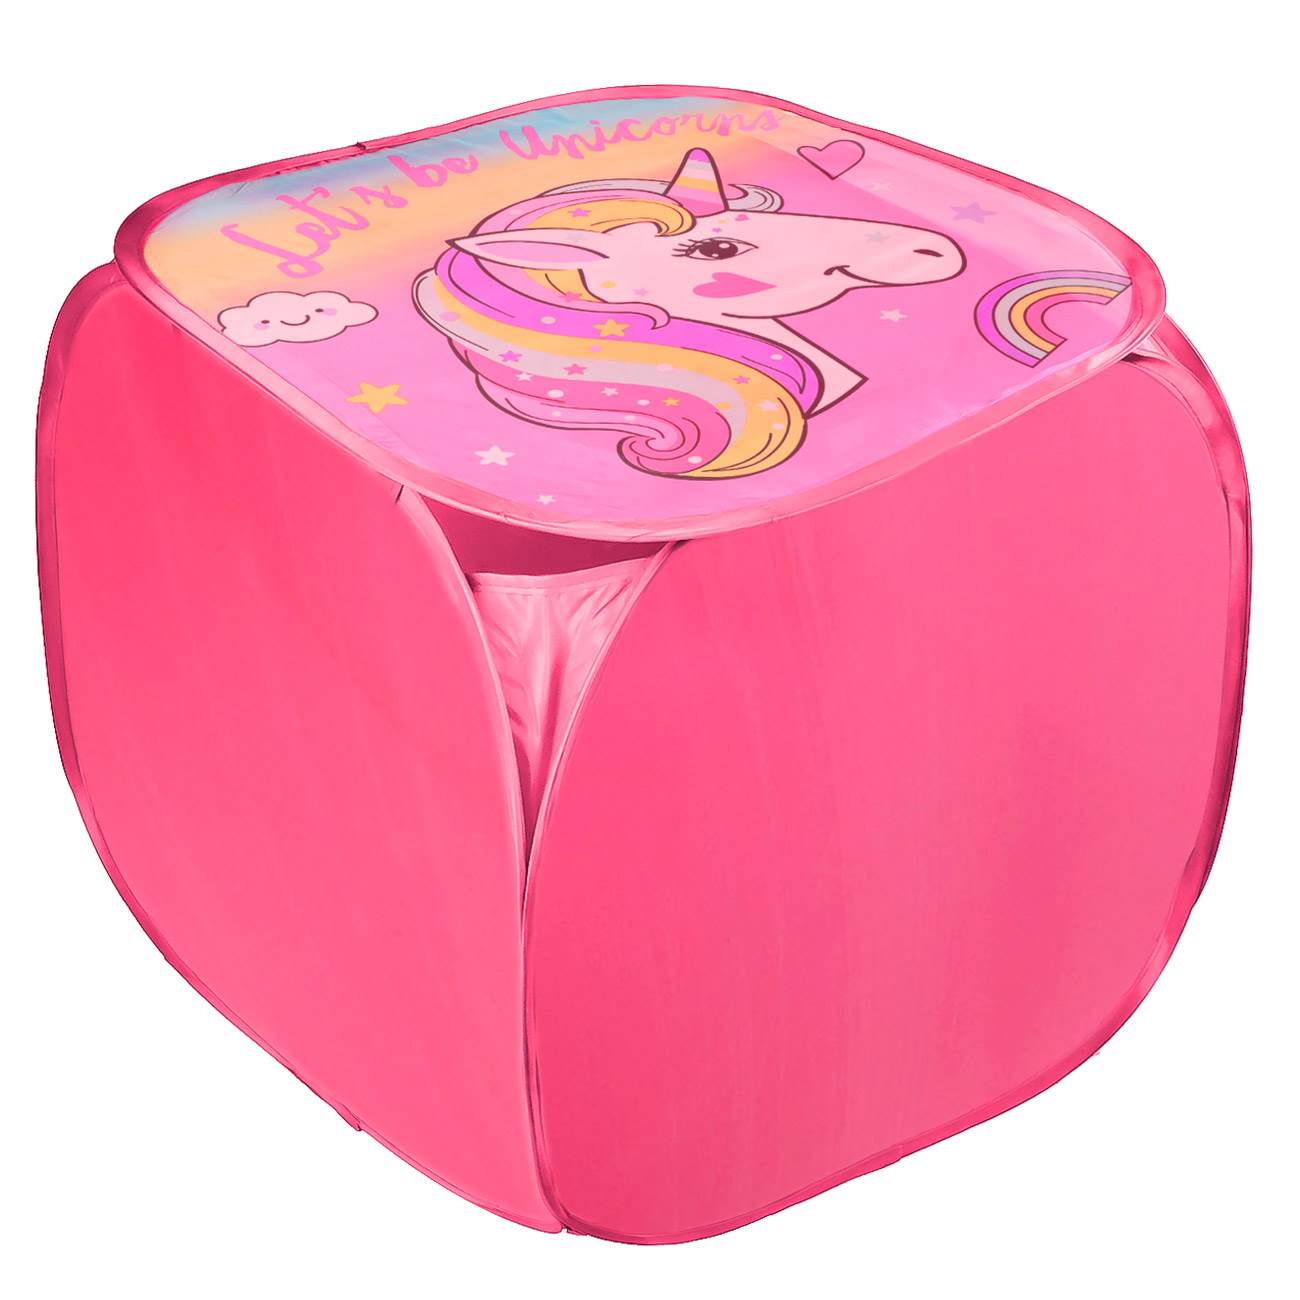 Κουτί Αποθήκευσης Παιχνιδιών Με Καπάκι Υφασμάτινο Ροζ Μονόκερος 45x45x45cm